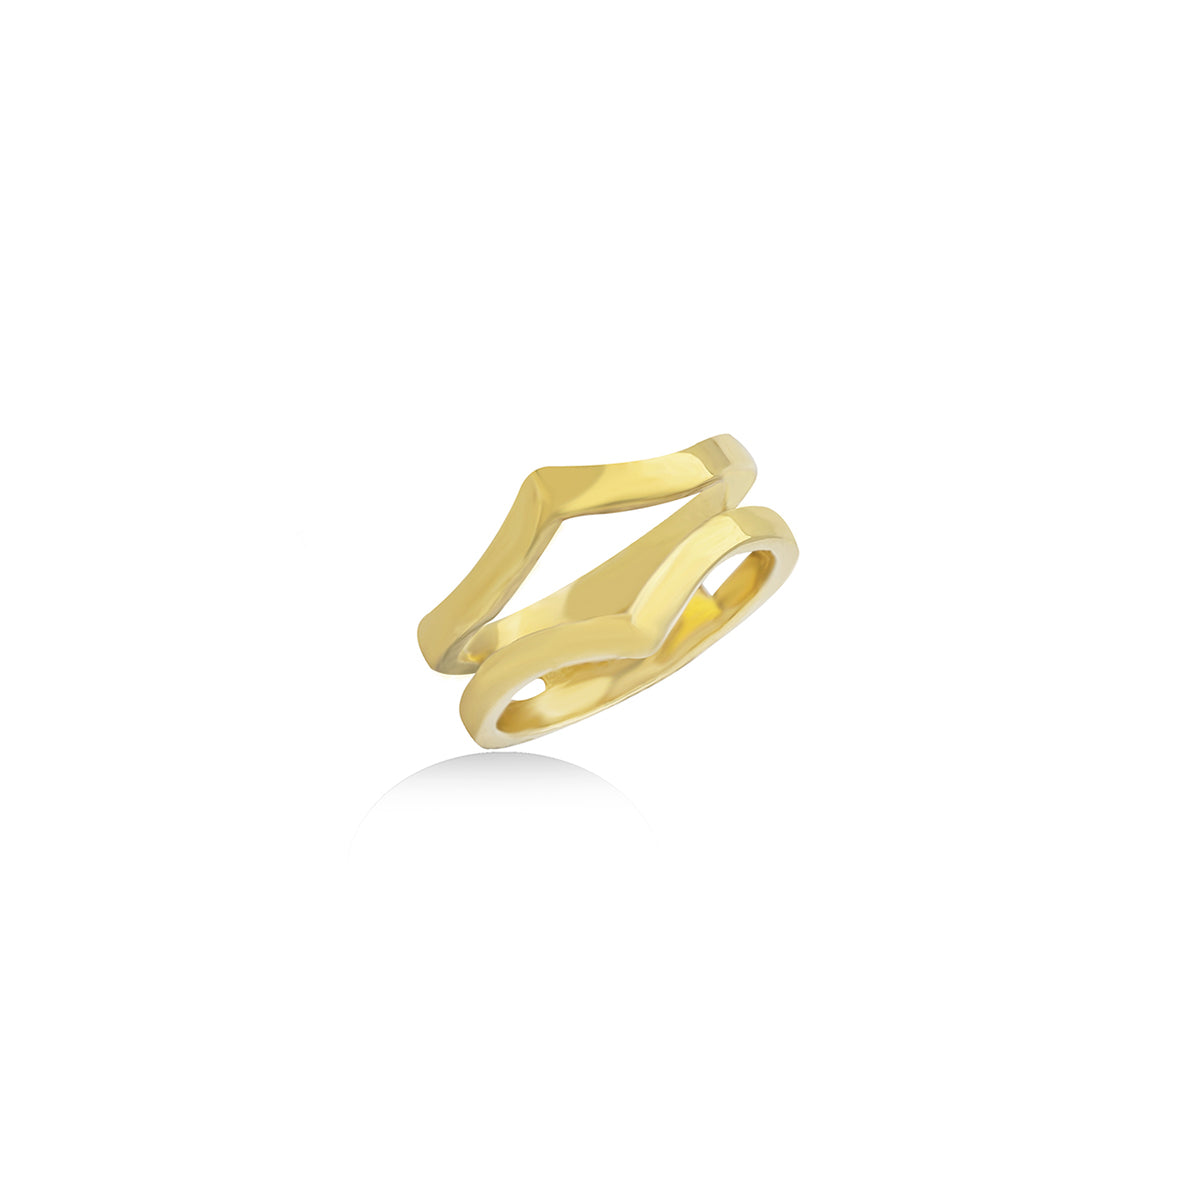 Enhancer Ring in 18k Yellow Gold